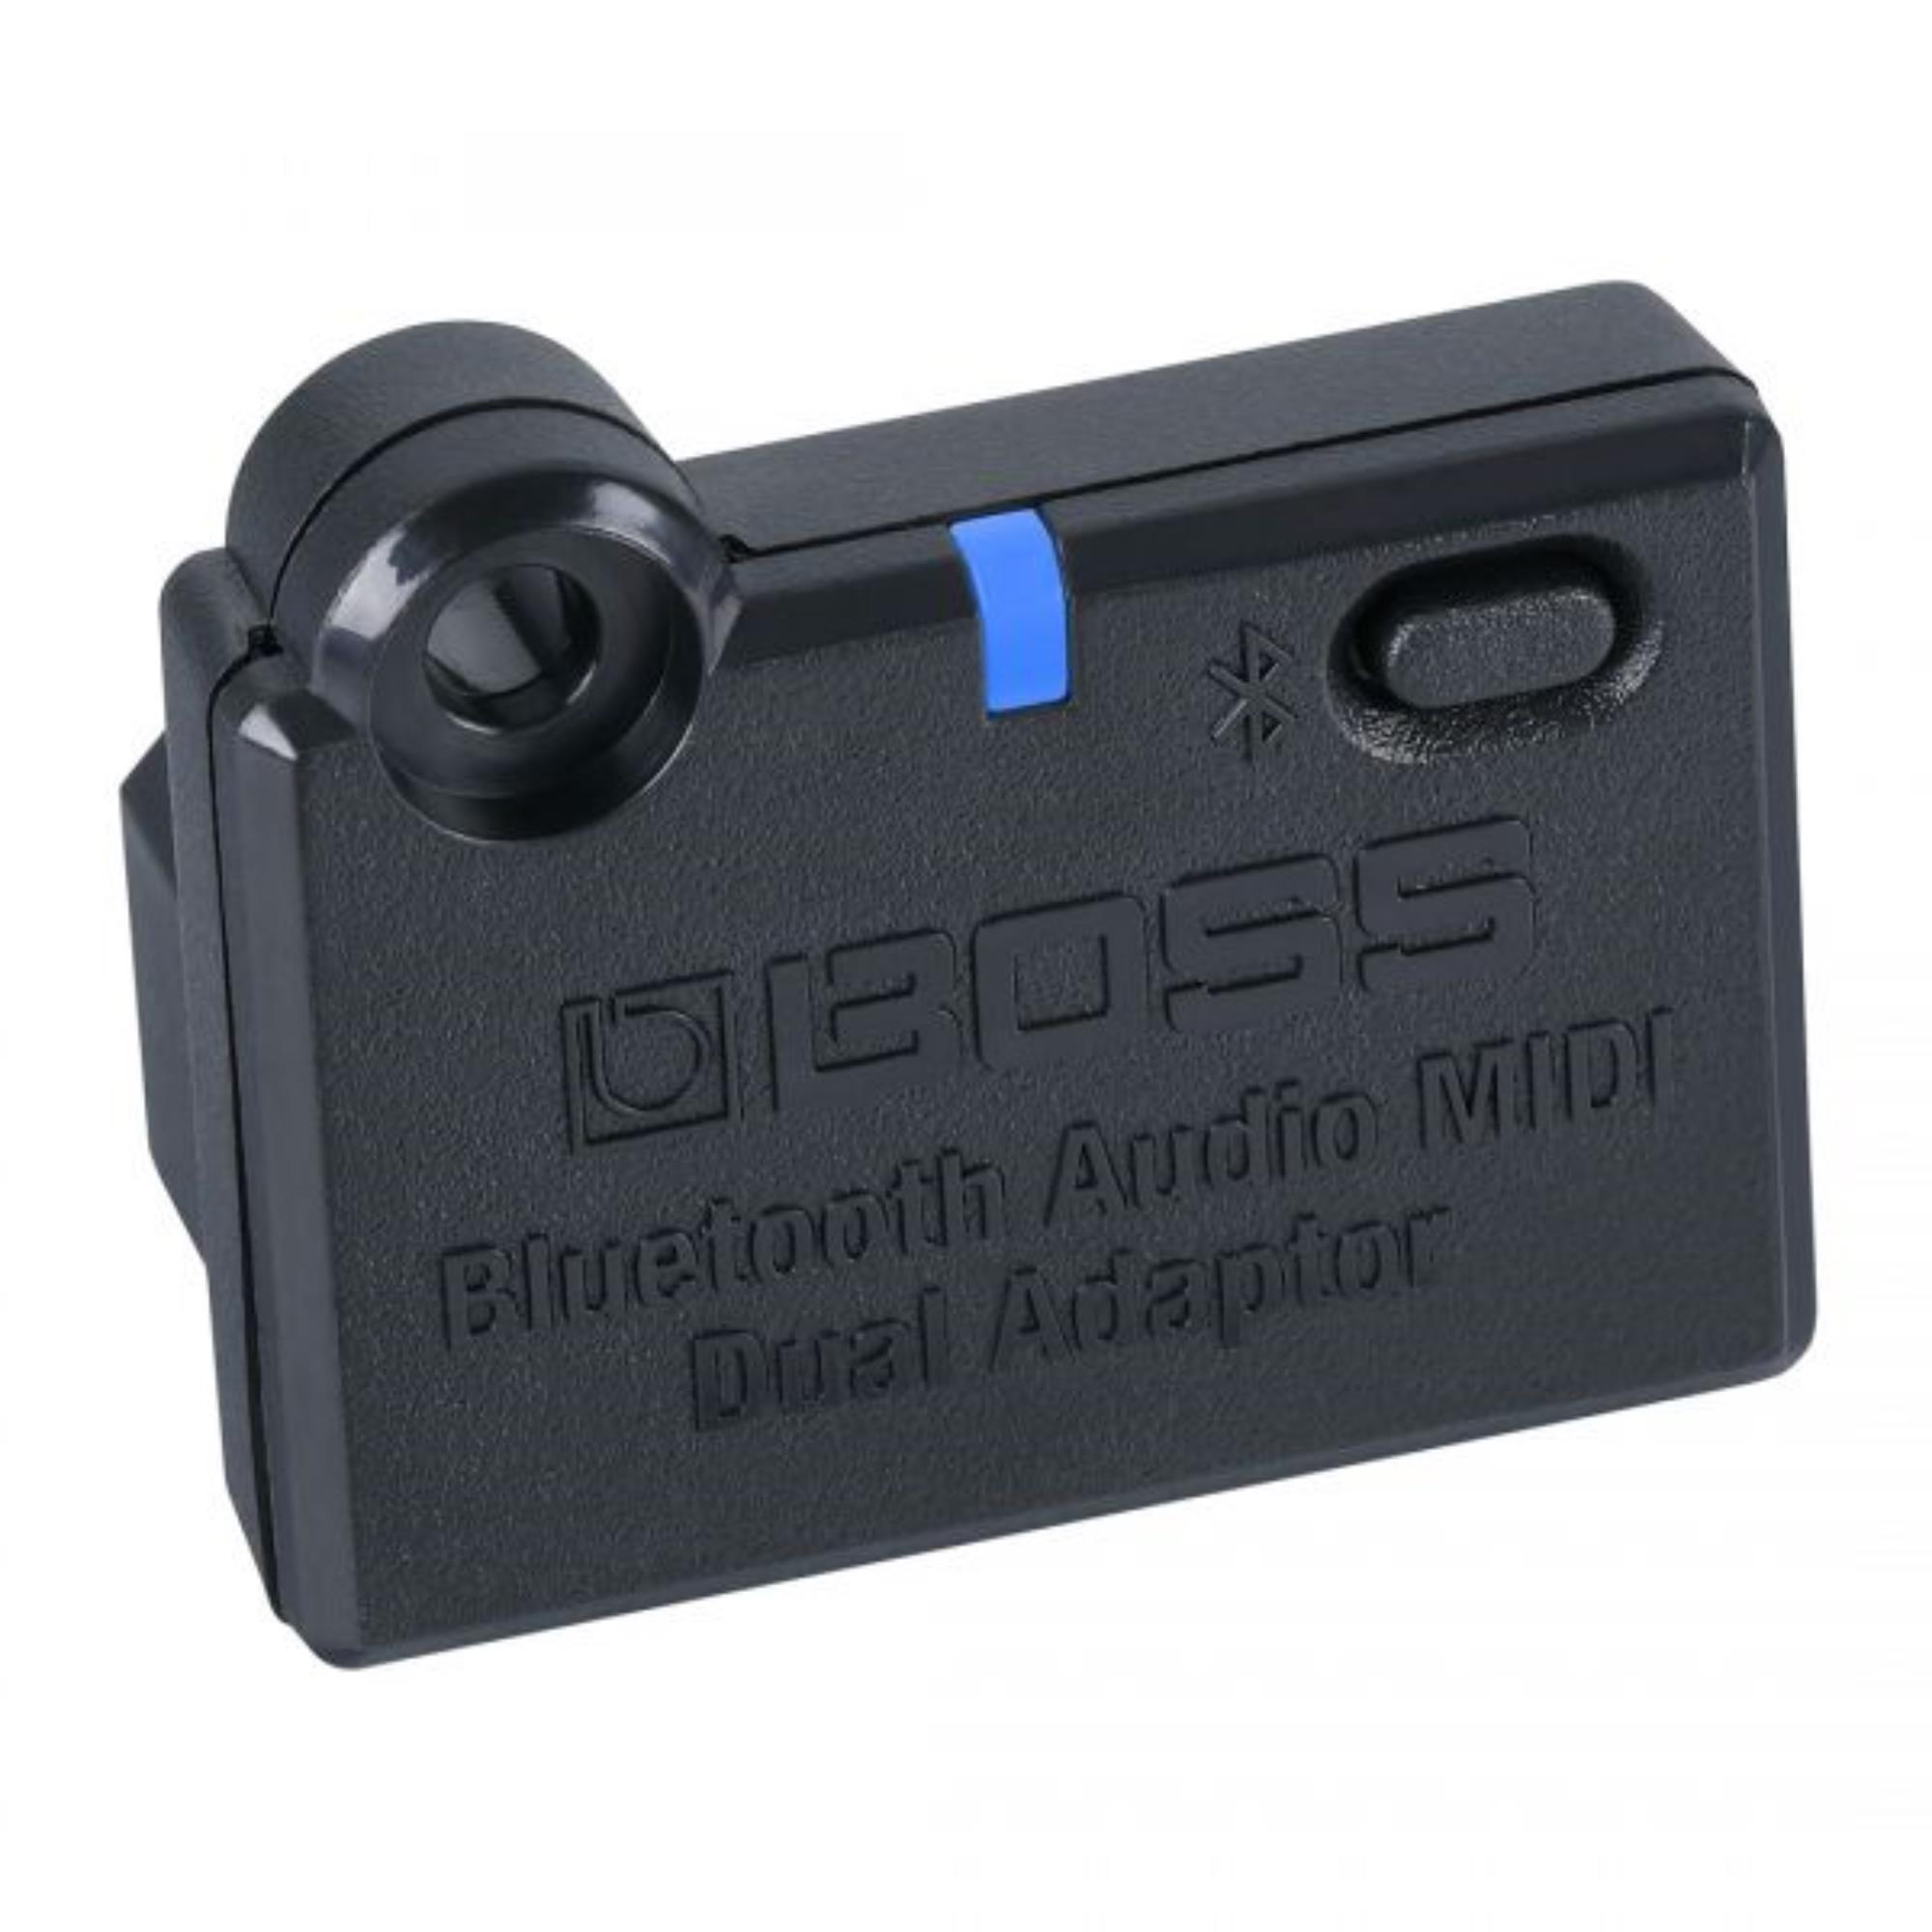 BOSS BT-DUAL Bluetooth Audio MIDI Dual Adaptor - Chitarre Wireless Per Strumenti